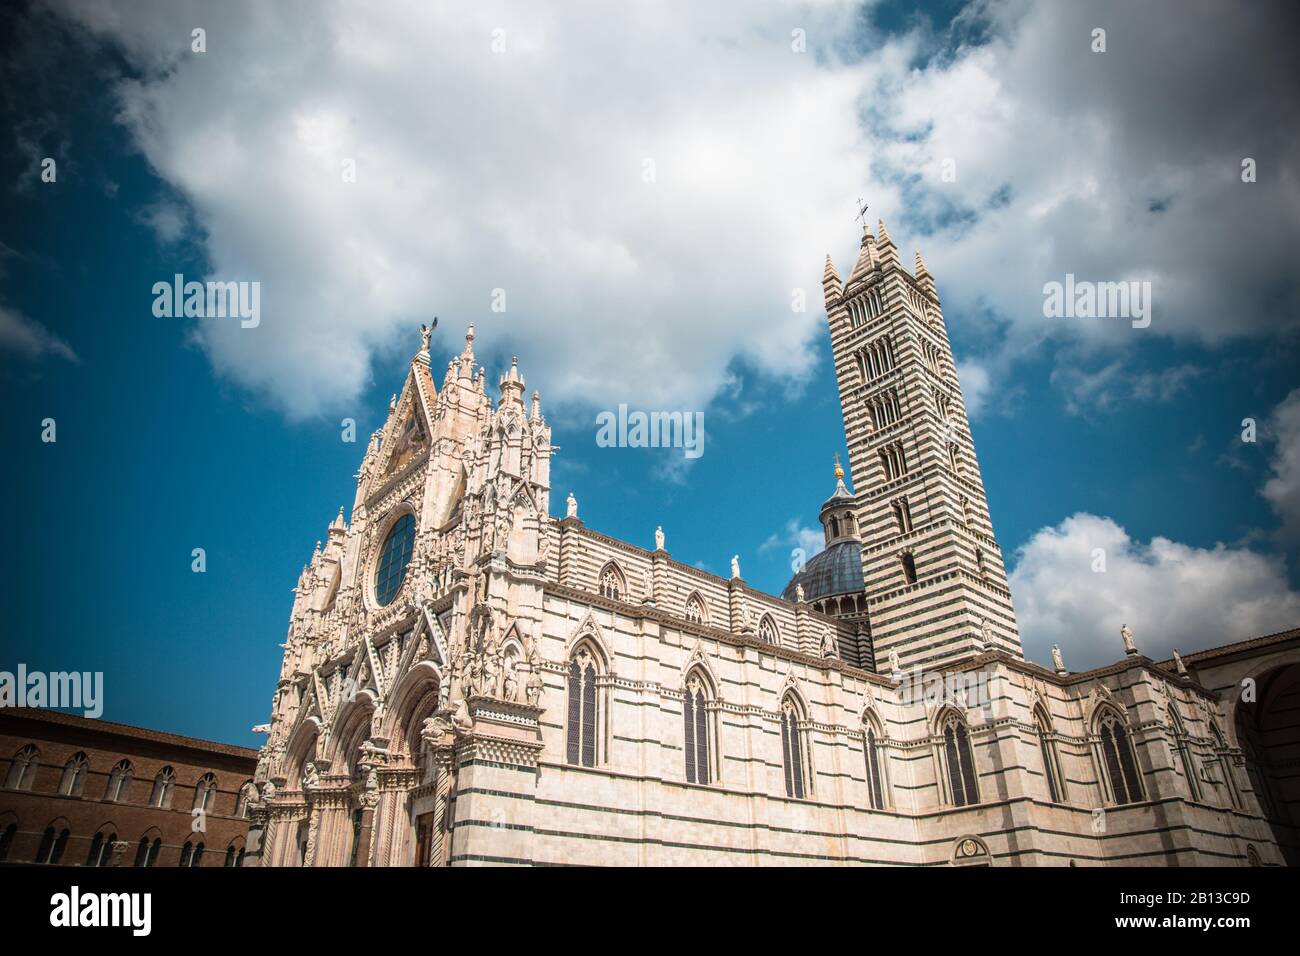 Kathedrale Von Siena/Dom Di Siena, Italien. Kathedrale der heiligen Maria Von Mariä Himmelfahrt Stockfoto